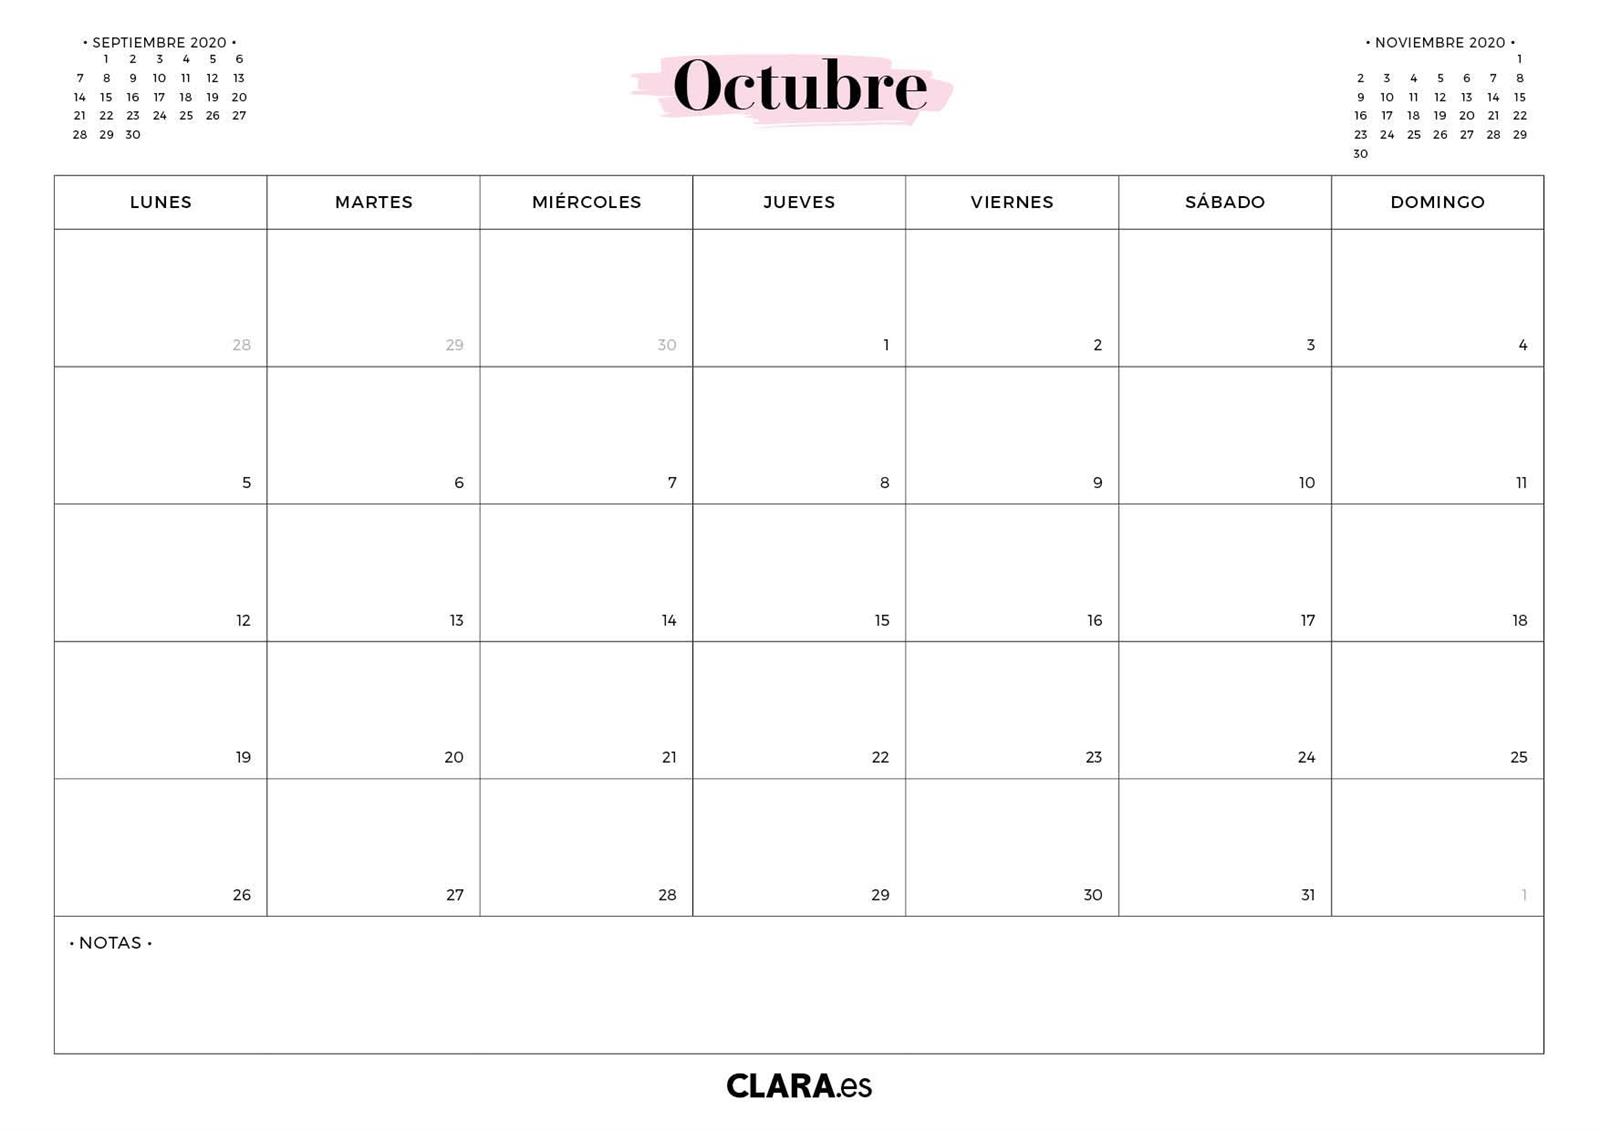 Calendario octubre 2020 para imprimir en jpg